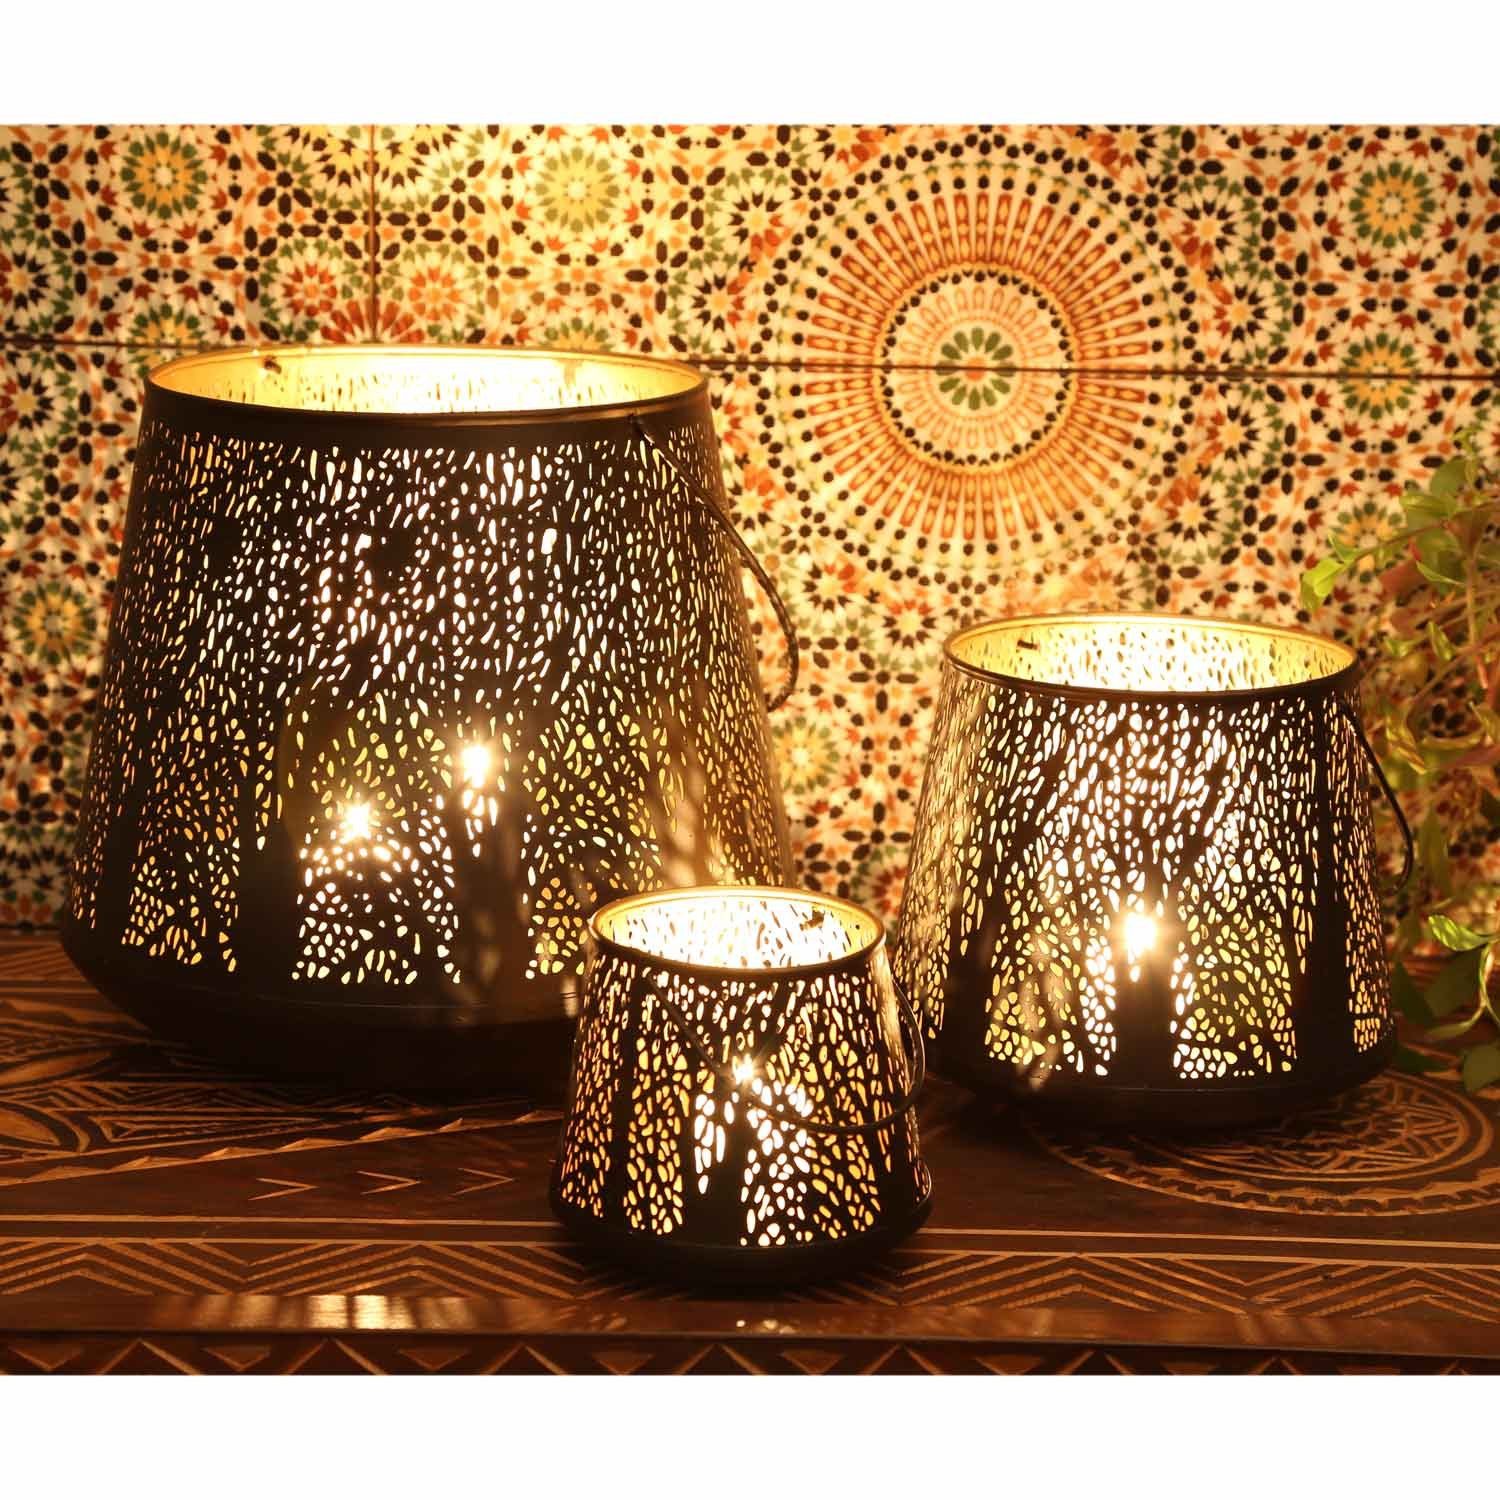 Casa Moro Windlicht Orientalisches Windlicht Como 3er Set innen Gold außen  schwarz (3 runde Laternen mit Henkel), Marokkanische Kerzenhalter Windlicht  IRL70